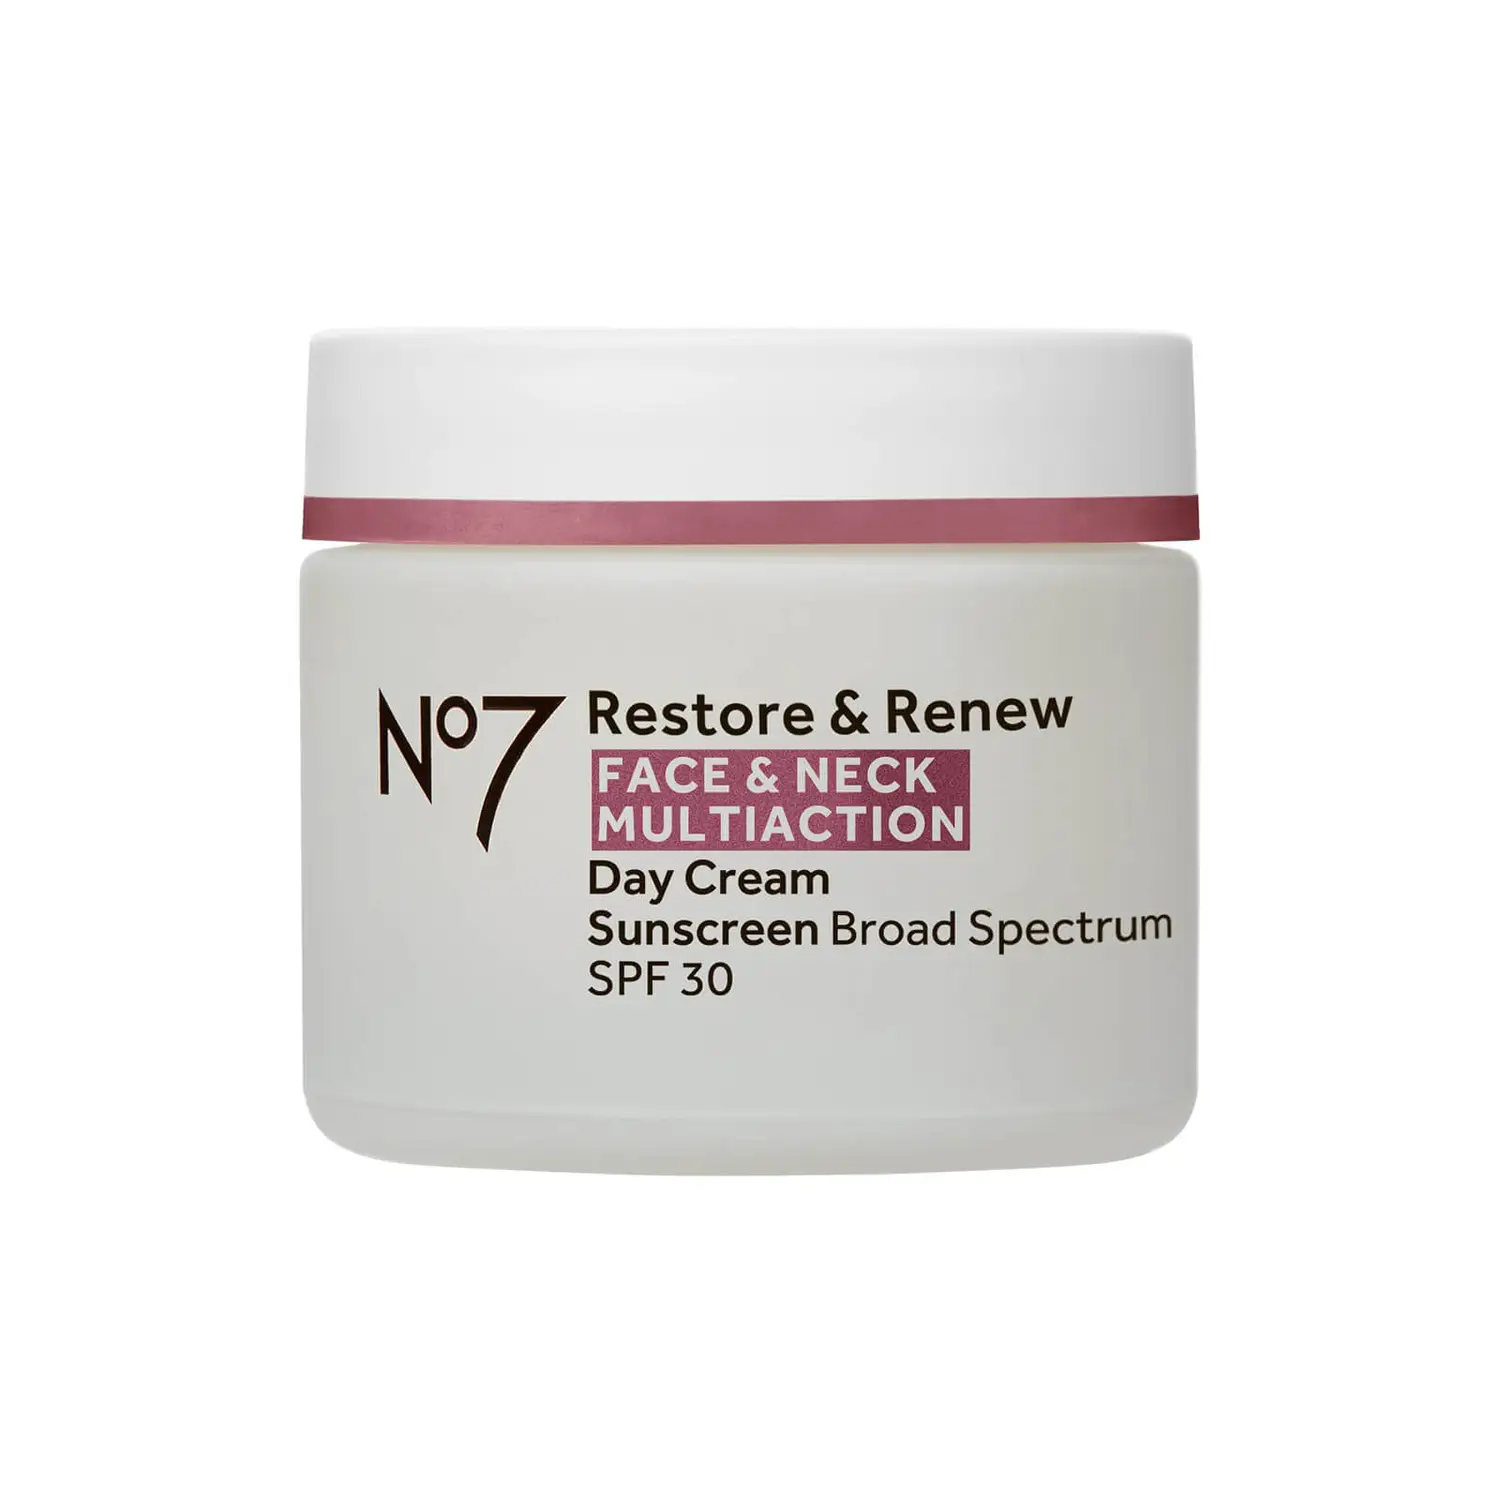 No7 Restore & Renew Face & Neck Multi Action Day Cream